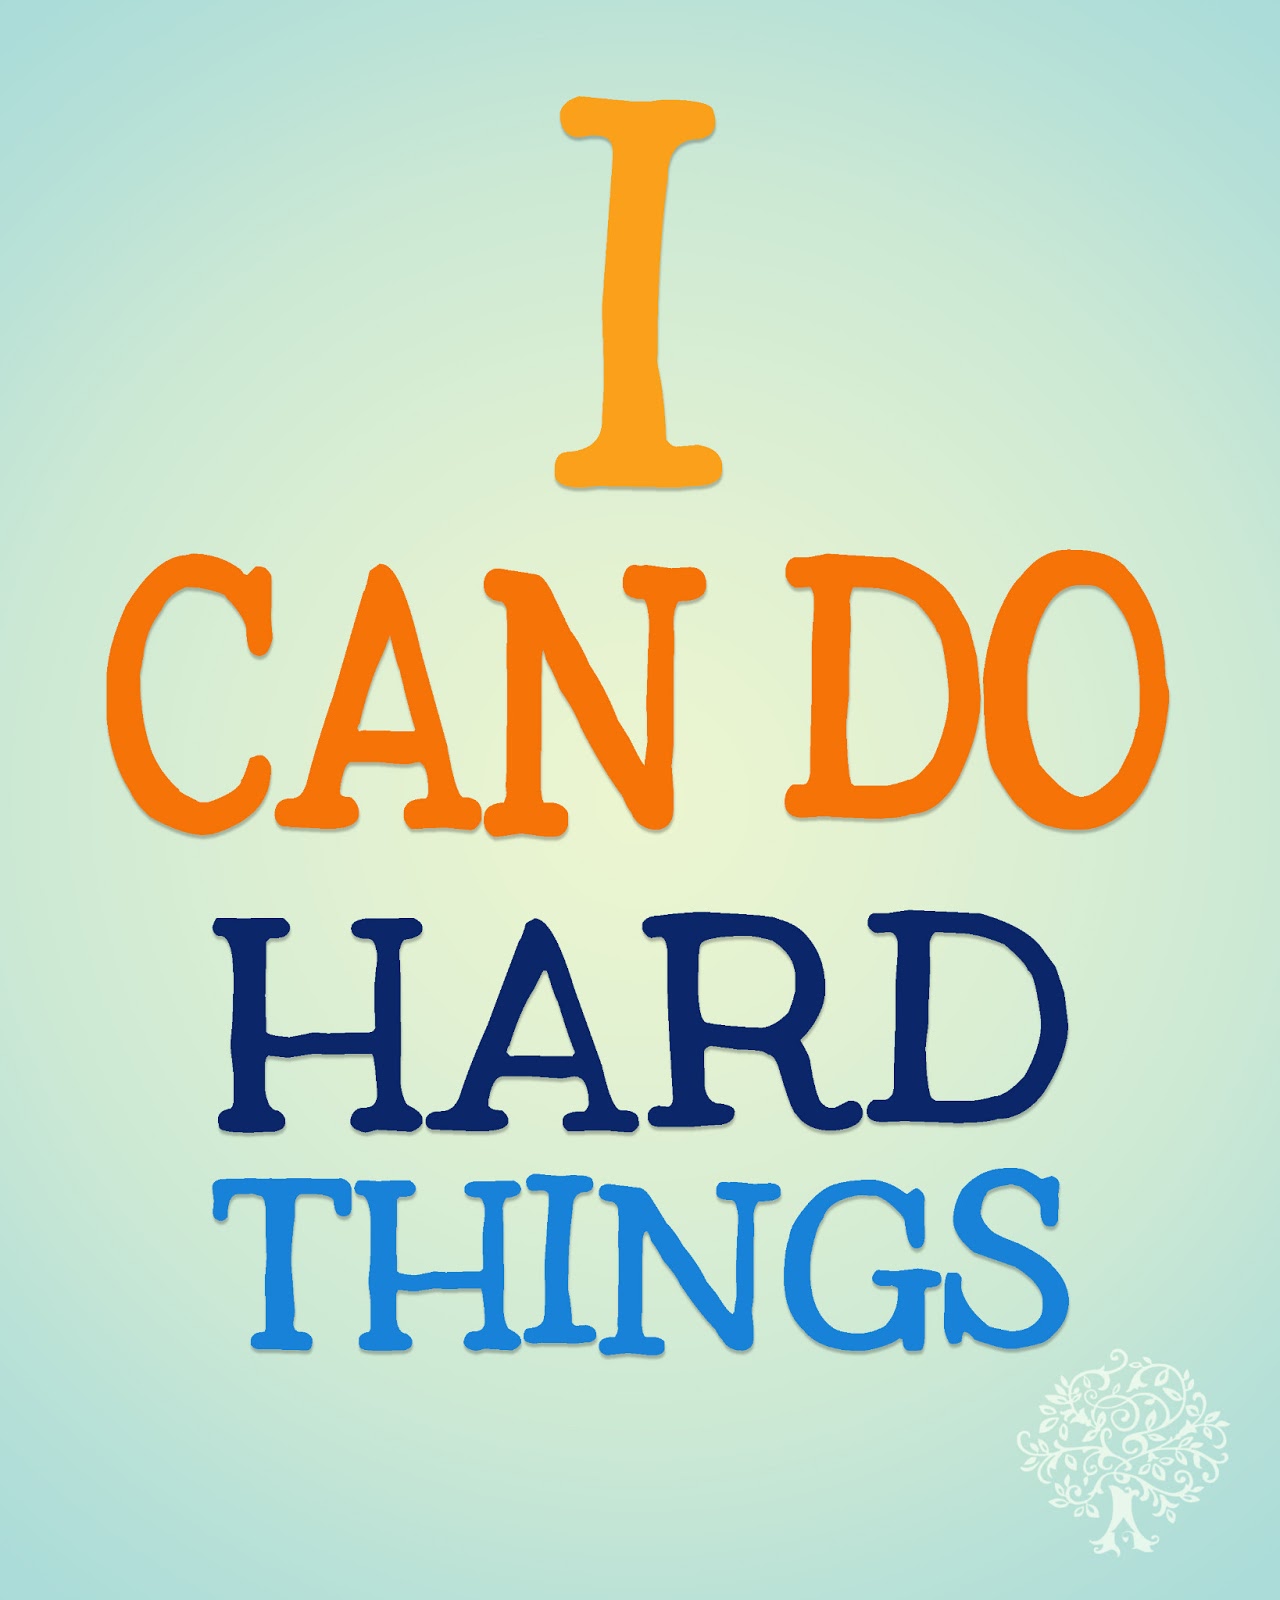 Hard things about hard things. Do hard things. Hard things hard thing.